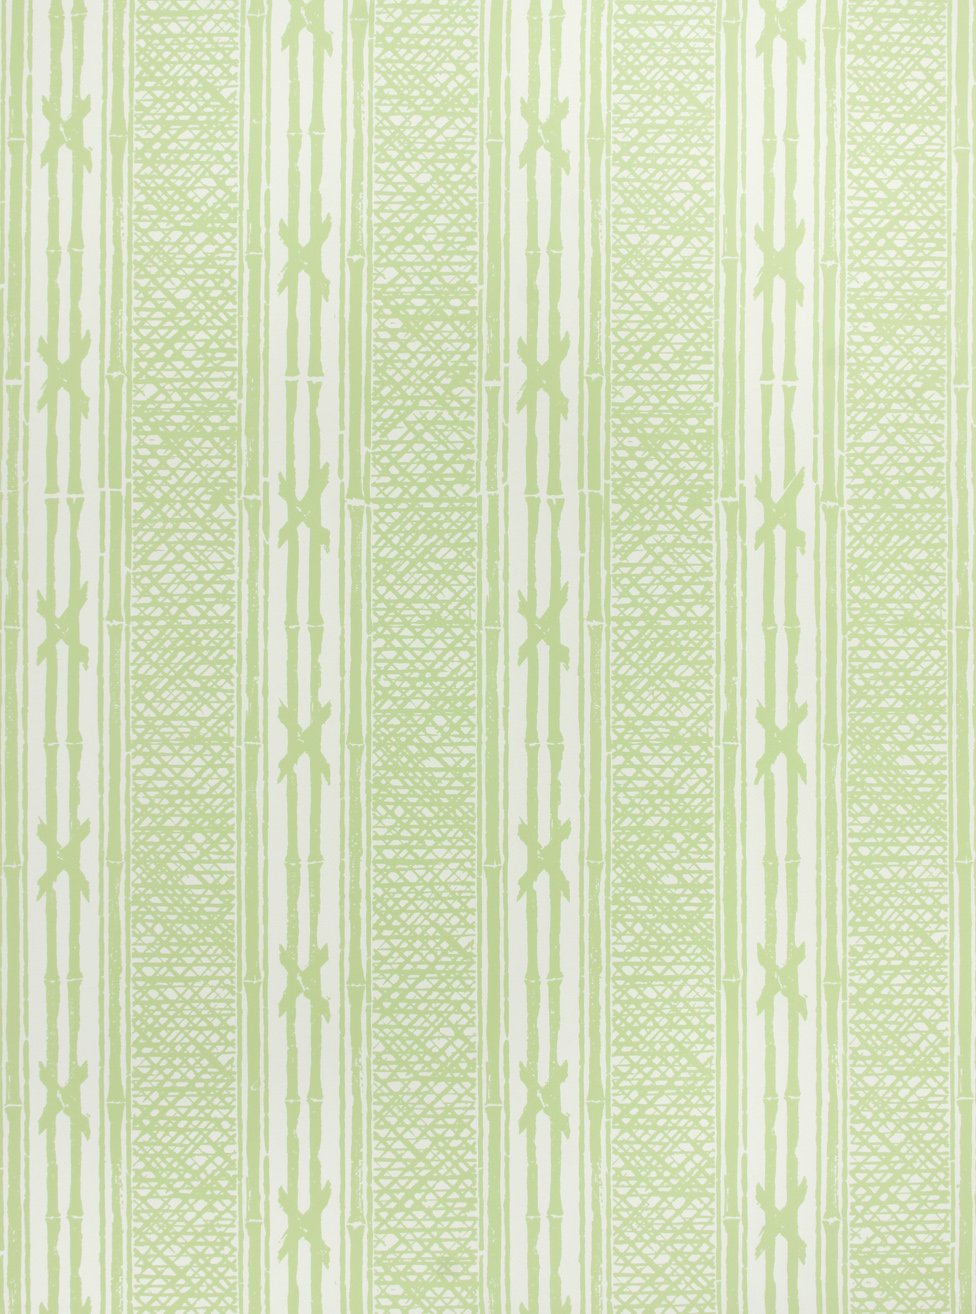 Picwic Stripe — Meg Braff Designs